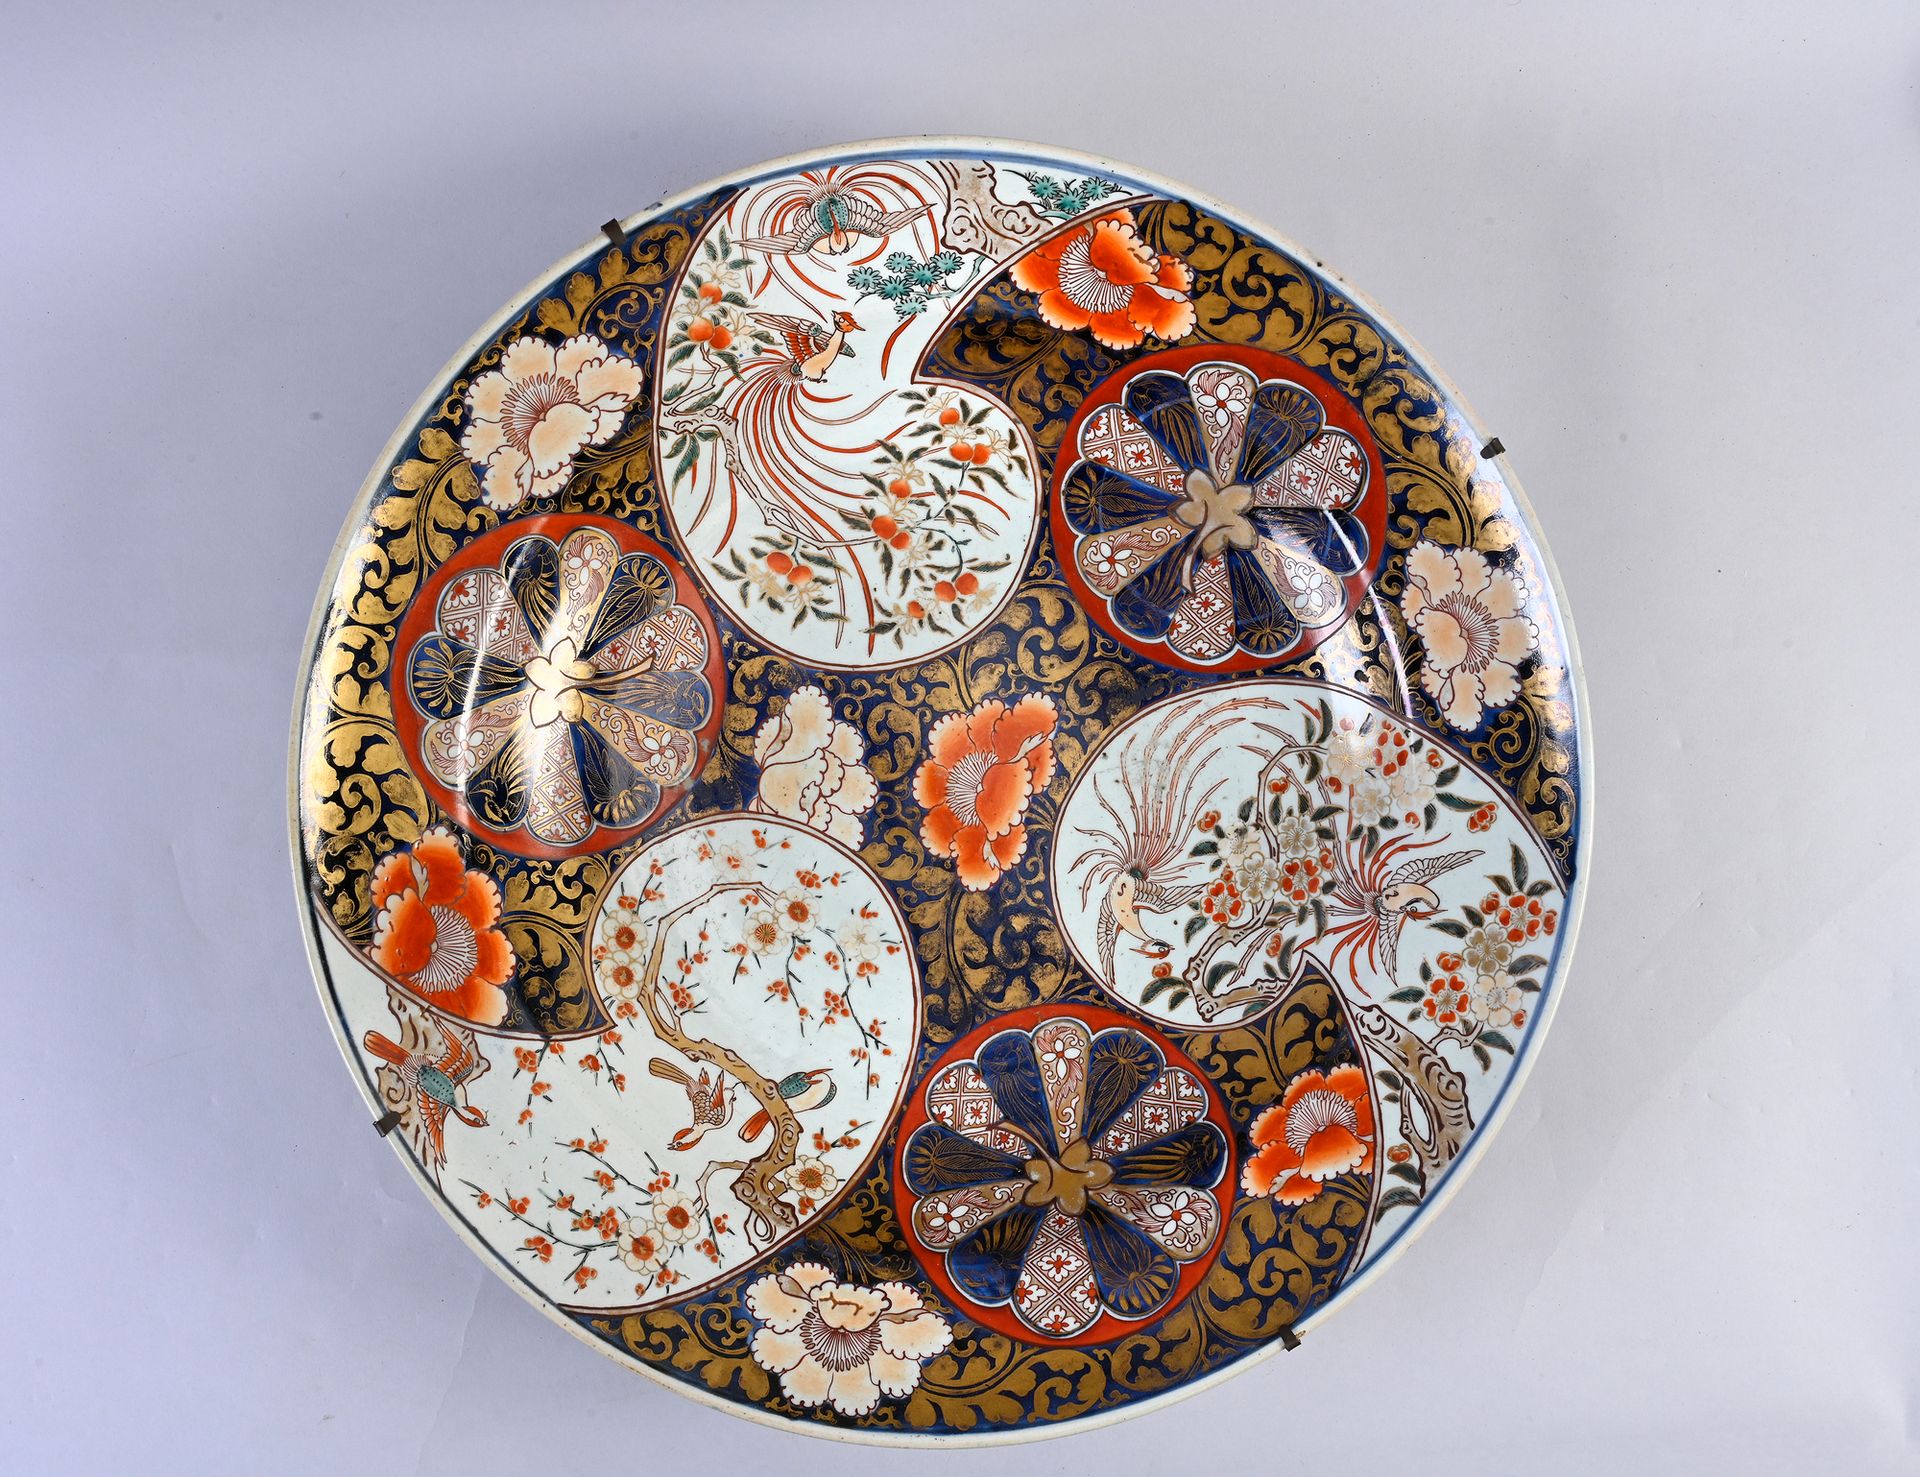 JAPON, XIXe siècle Gran plato de porcelana Imari
Con decoración de flores y pája&hellip;